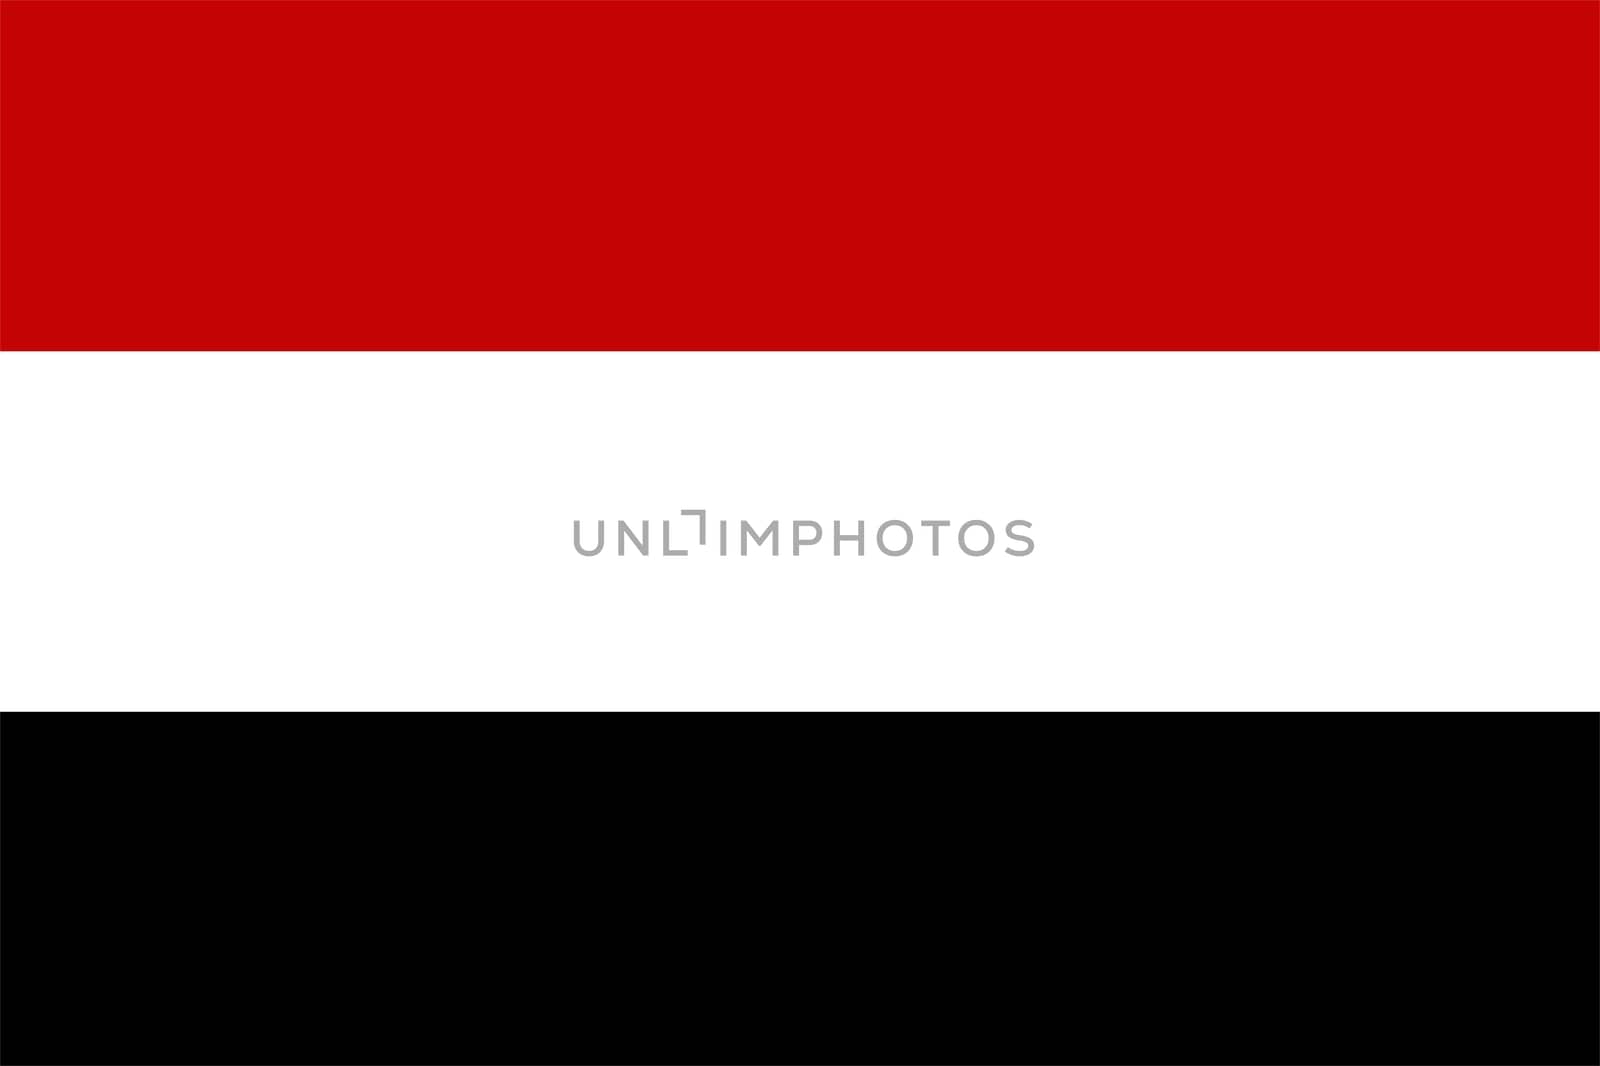 2D illustration of the flag of yemen